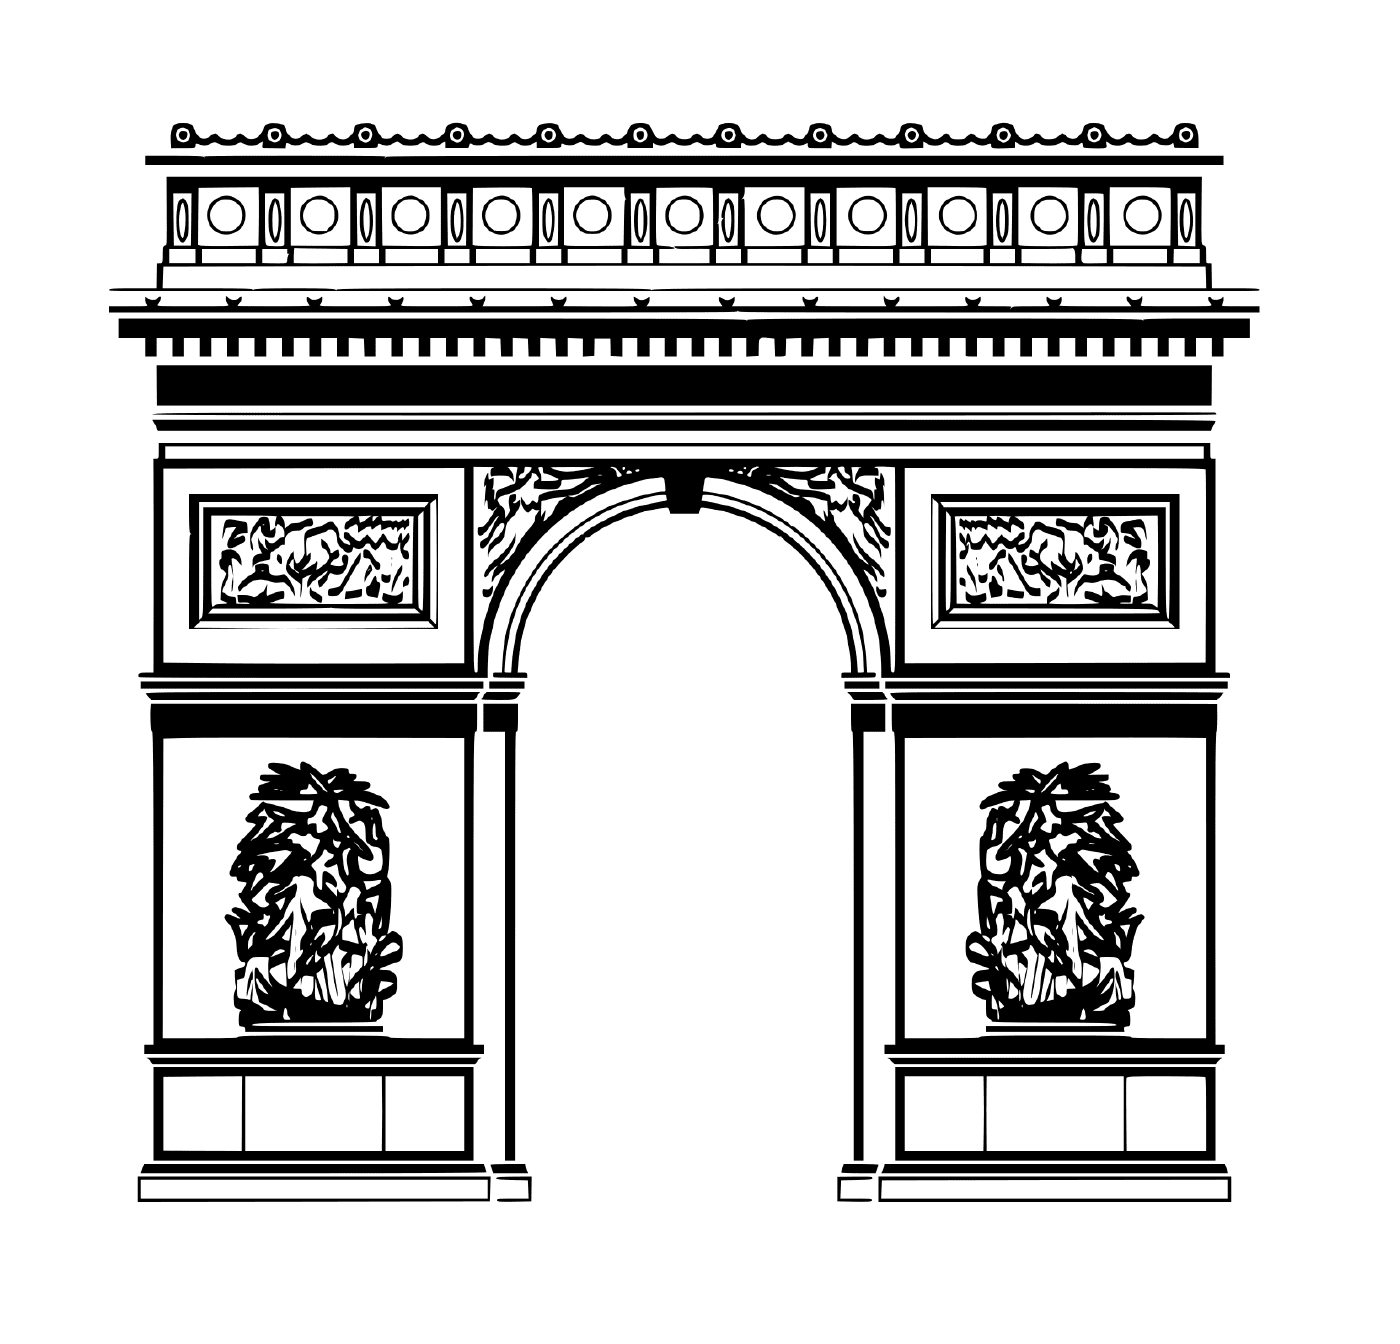  Cidade de Paris Arc de Triomphe 